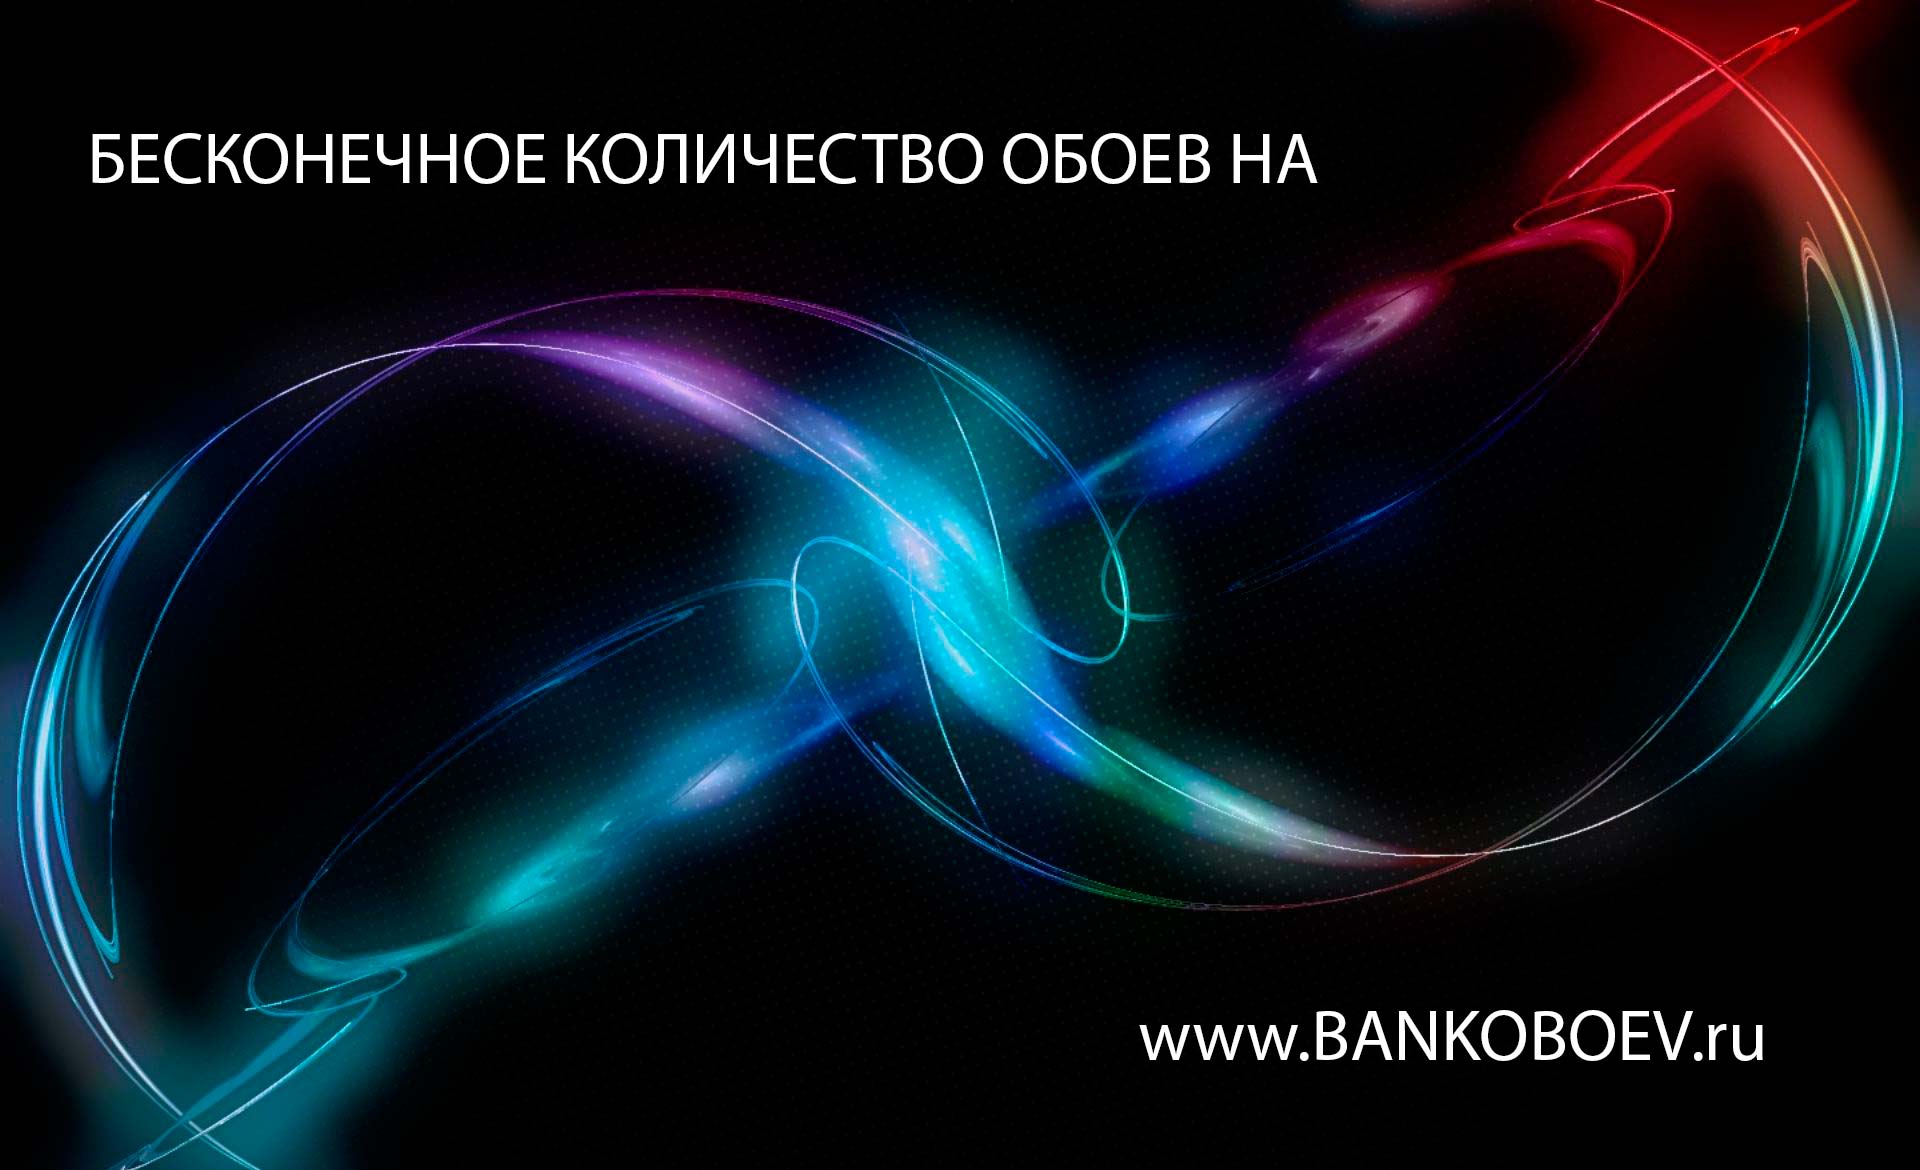 Source Bankoboev Ru Image Nduyndk